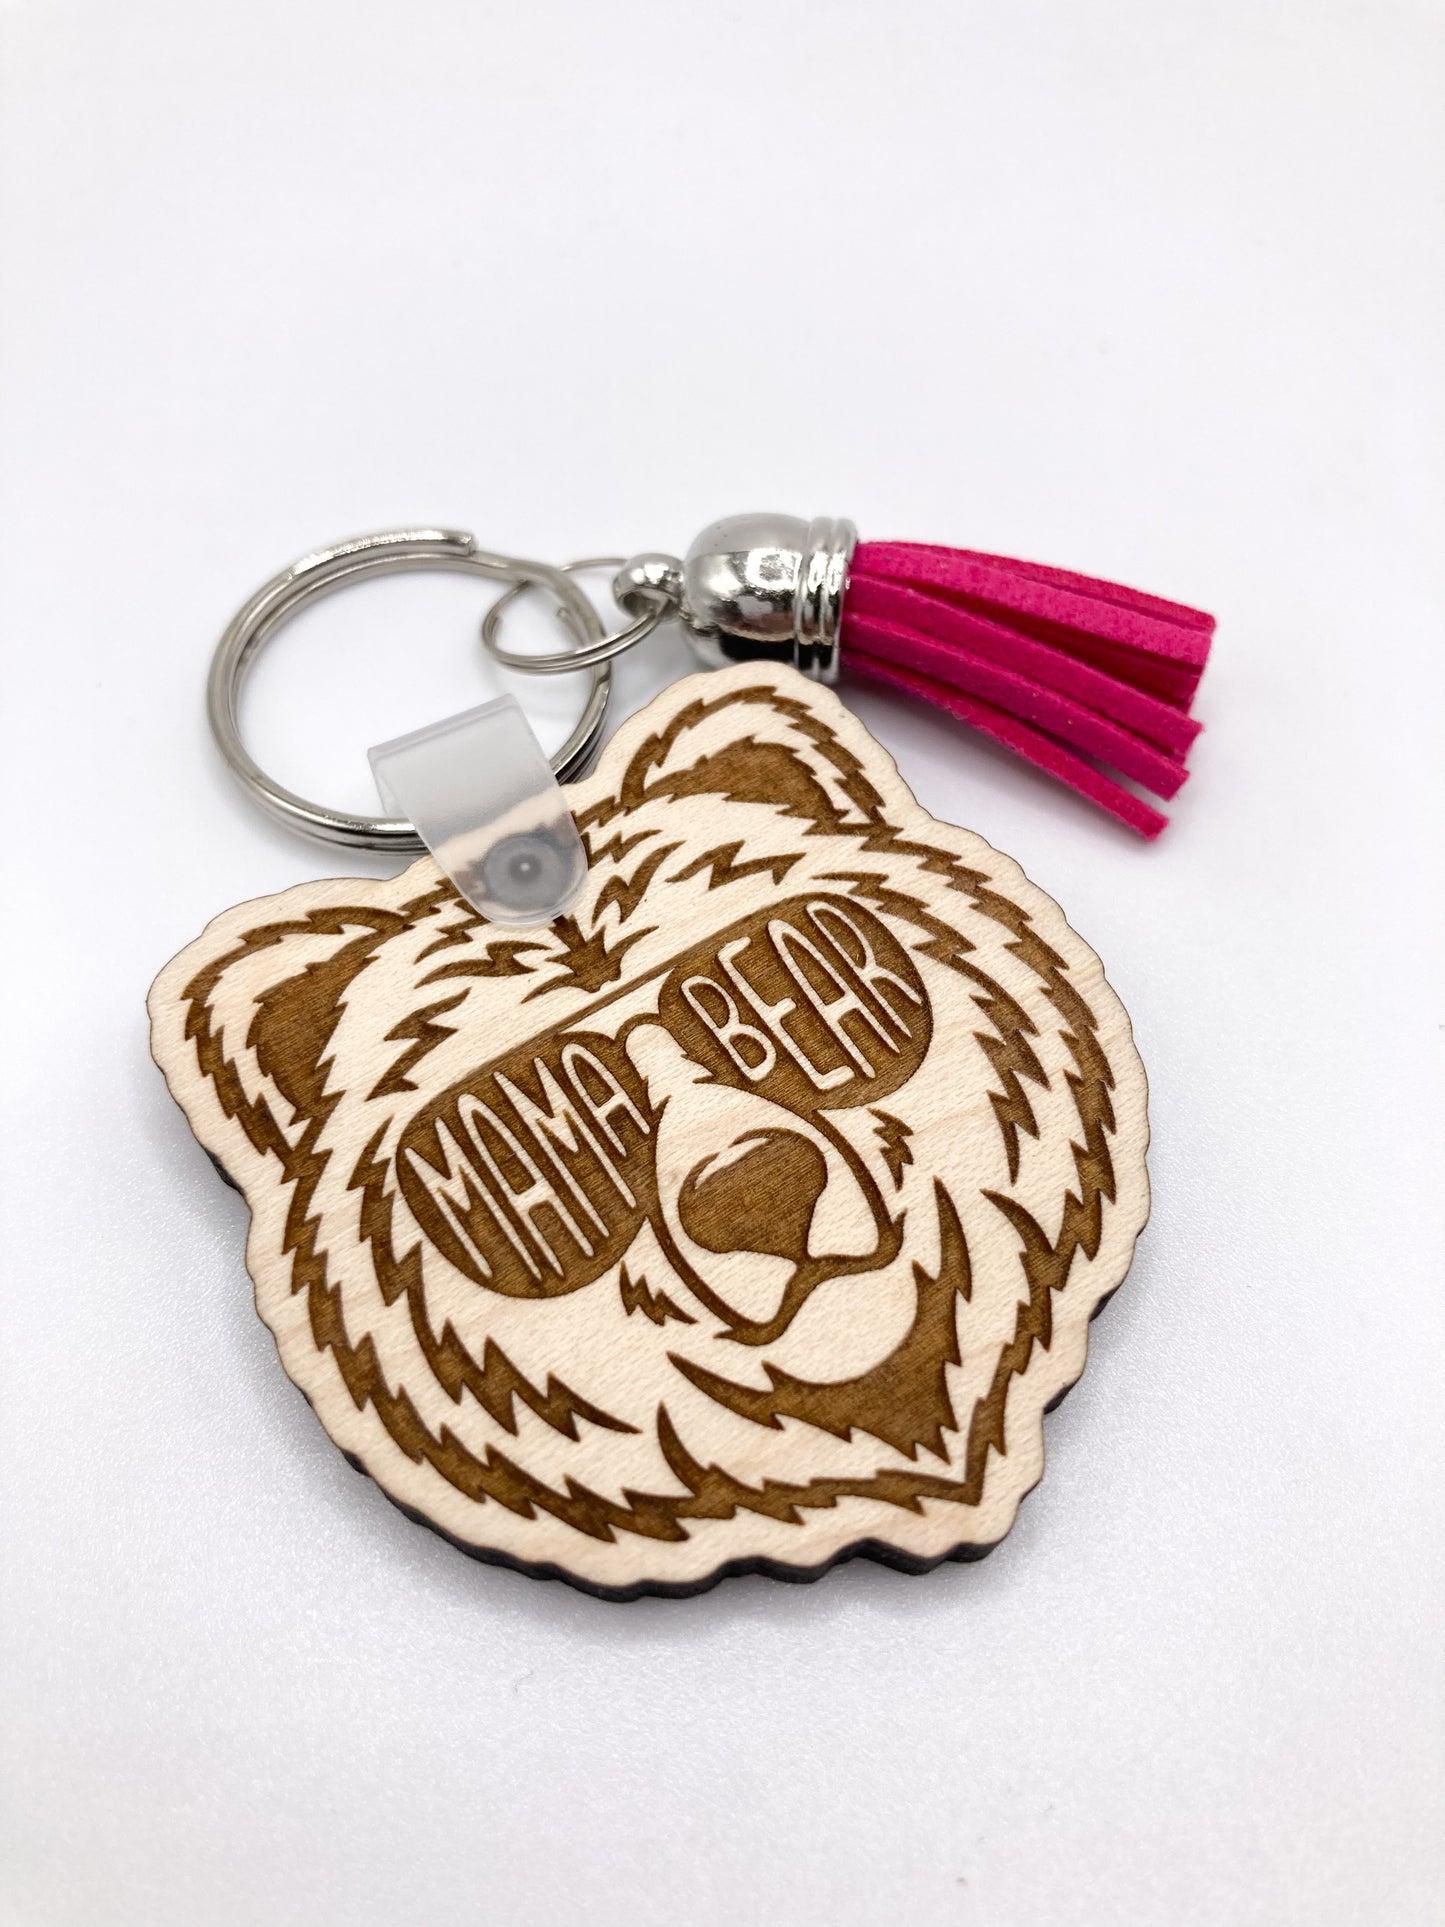 Mama Bear Wooden Keychain